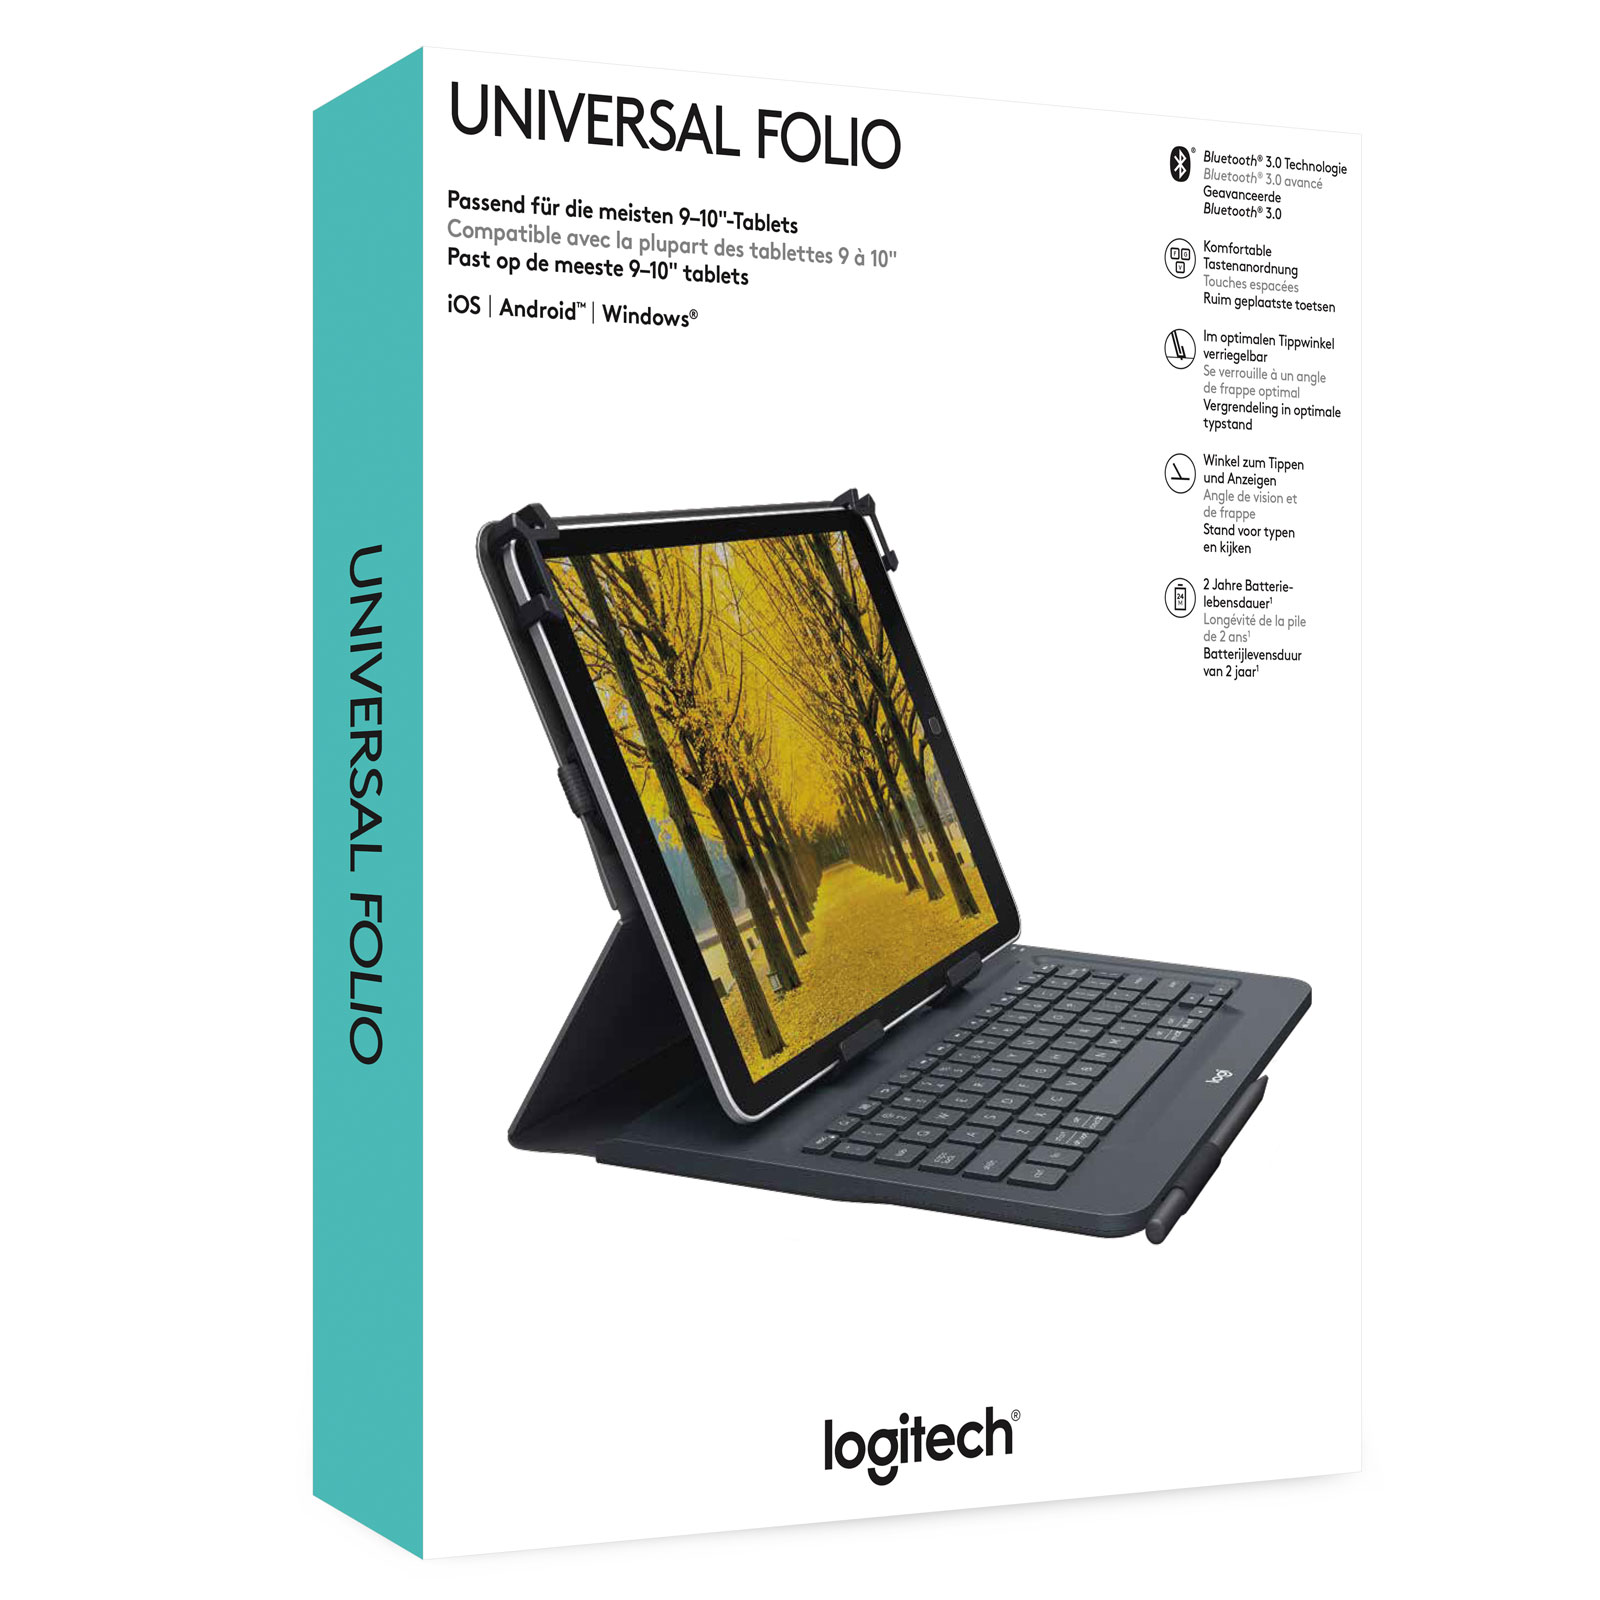 Etui UNIVERSAL FOLIO avec clavier intégré - Accessoire tablette - 1